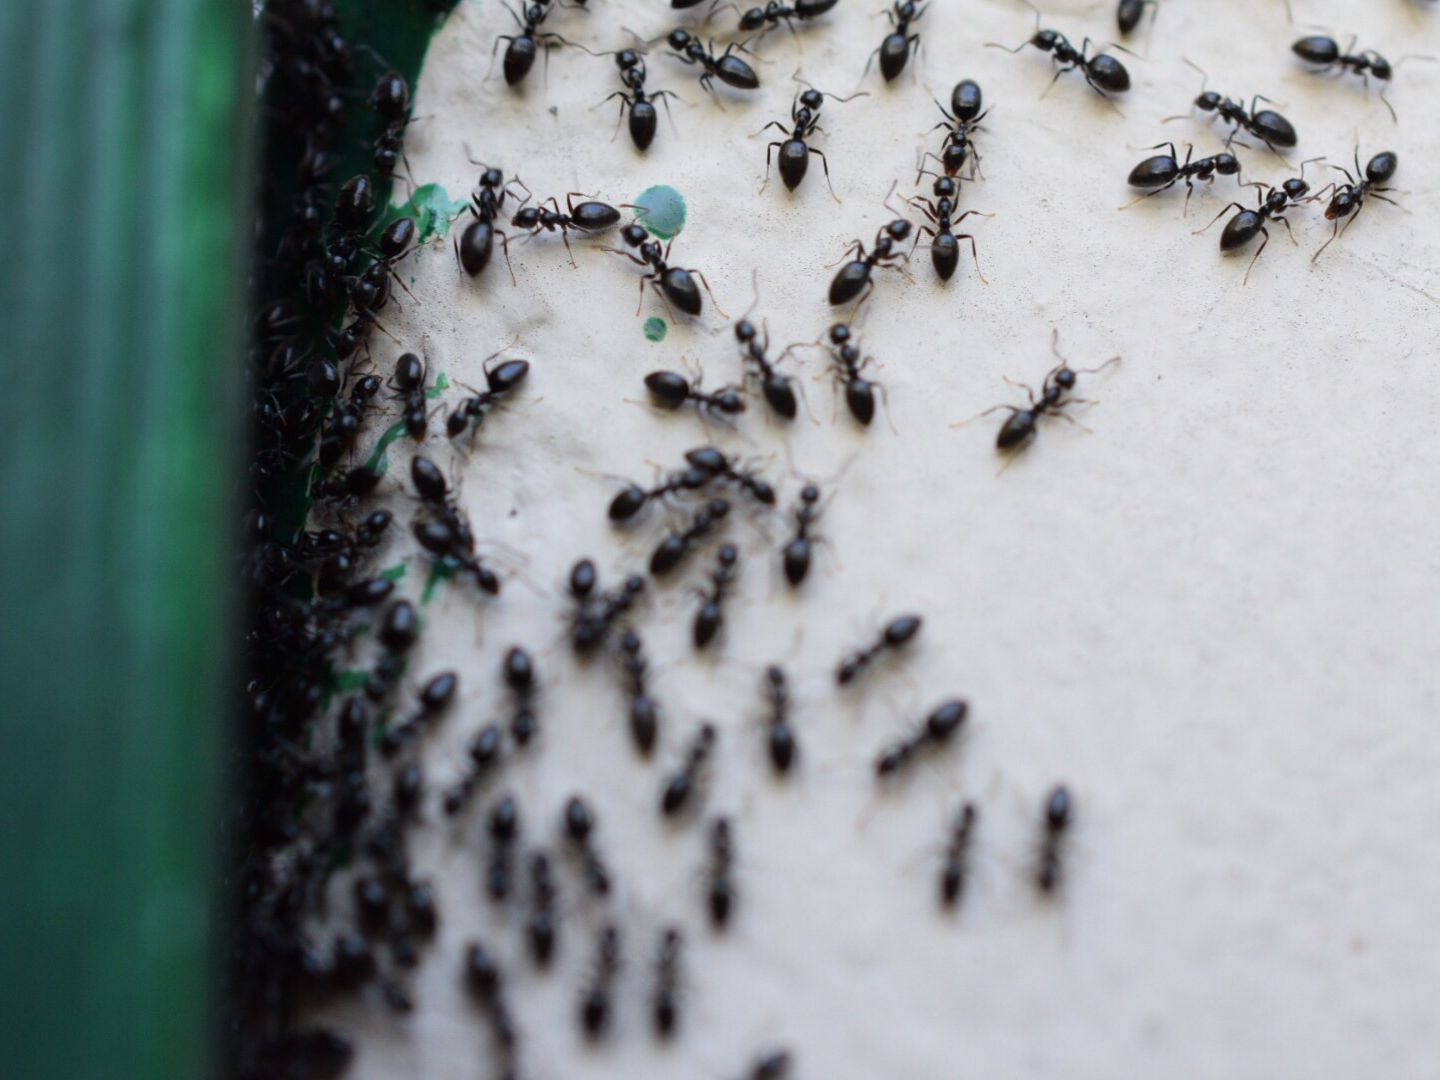 كيف تُوقِف غزو النمل في المنزل؟ watanserb.com